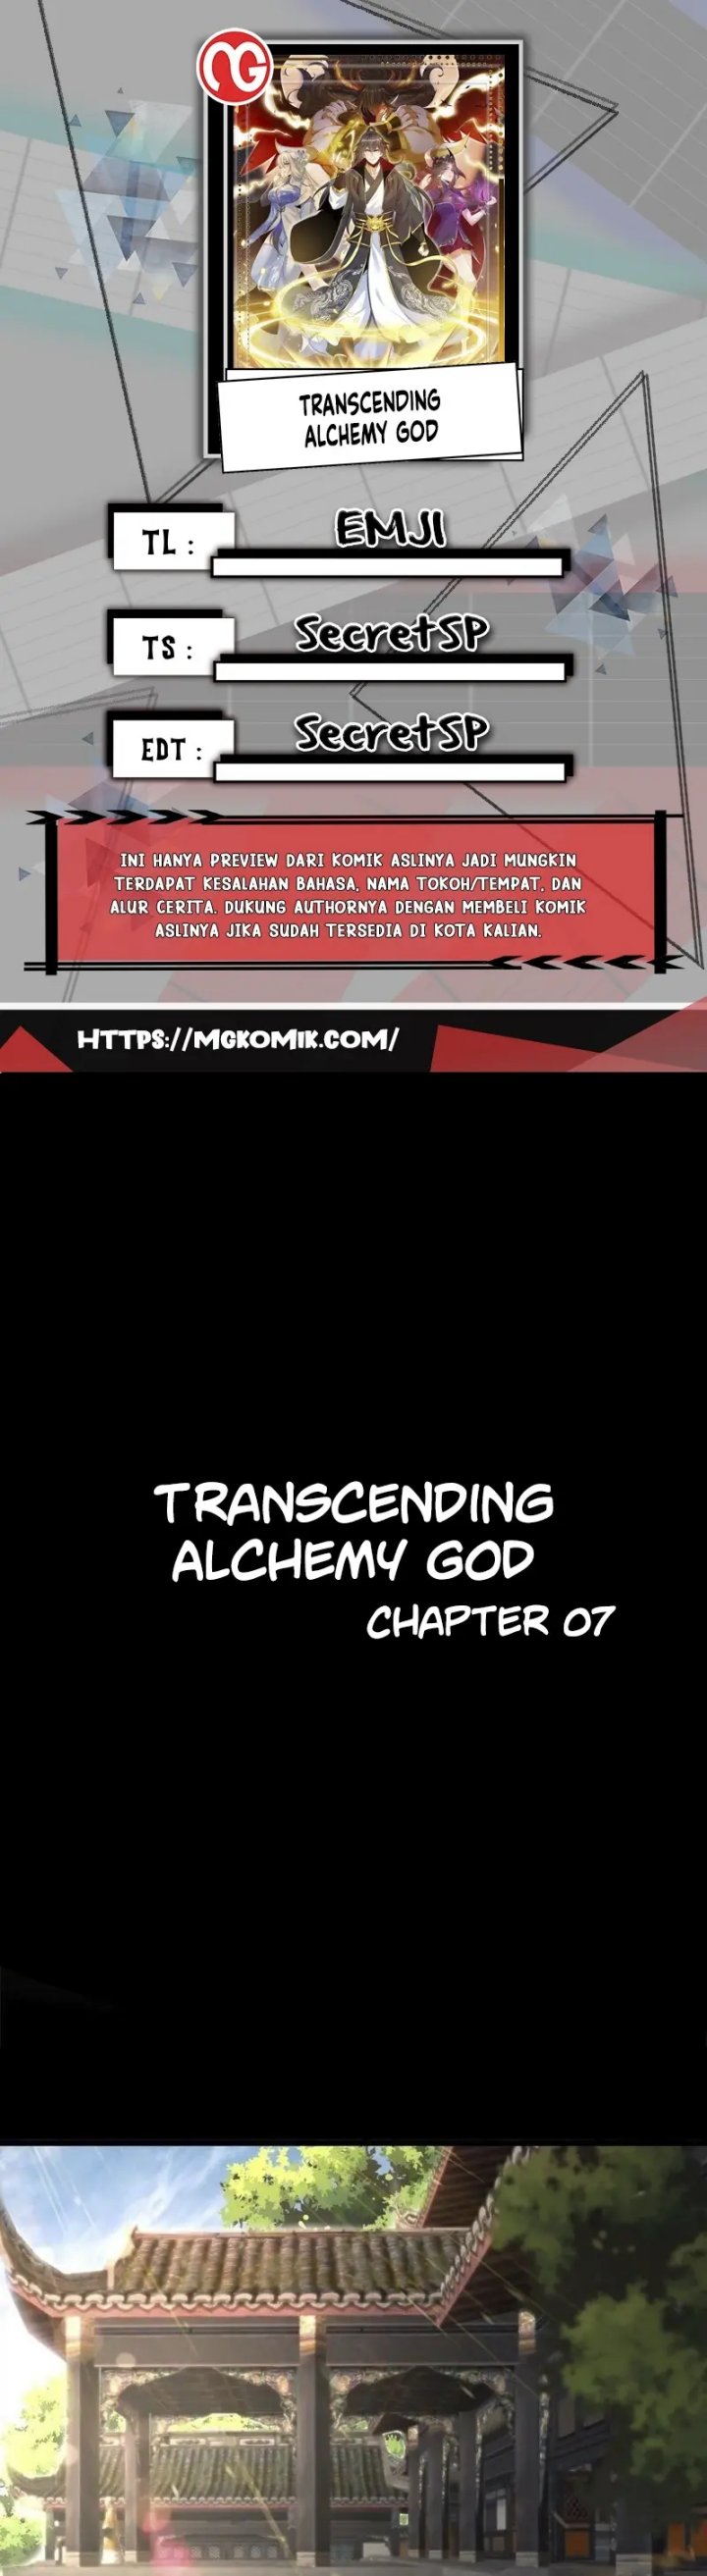 Transcending Alchemy God Chapter 7